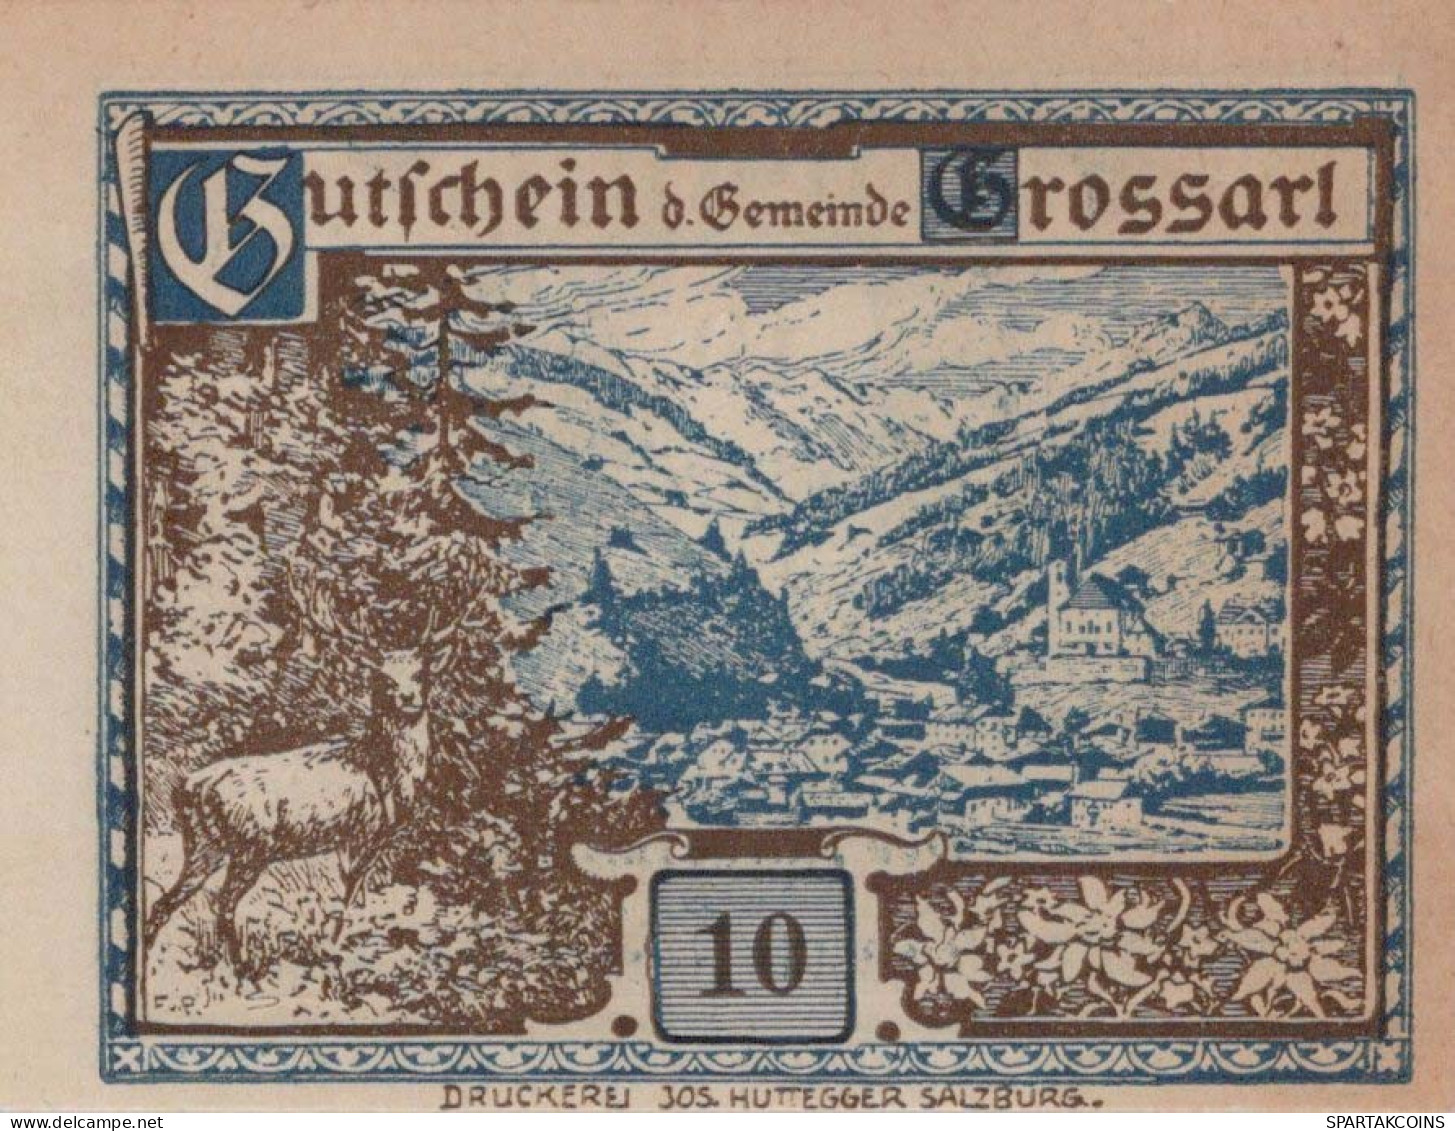 10 HELLER 1920 Stadt GROSSARL Salzburg Österreich Notgeld Banknote #PE998 - Lokale Ausgaben